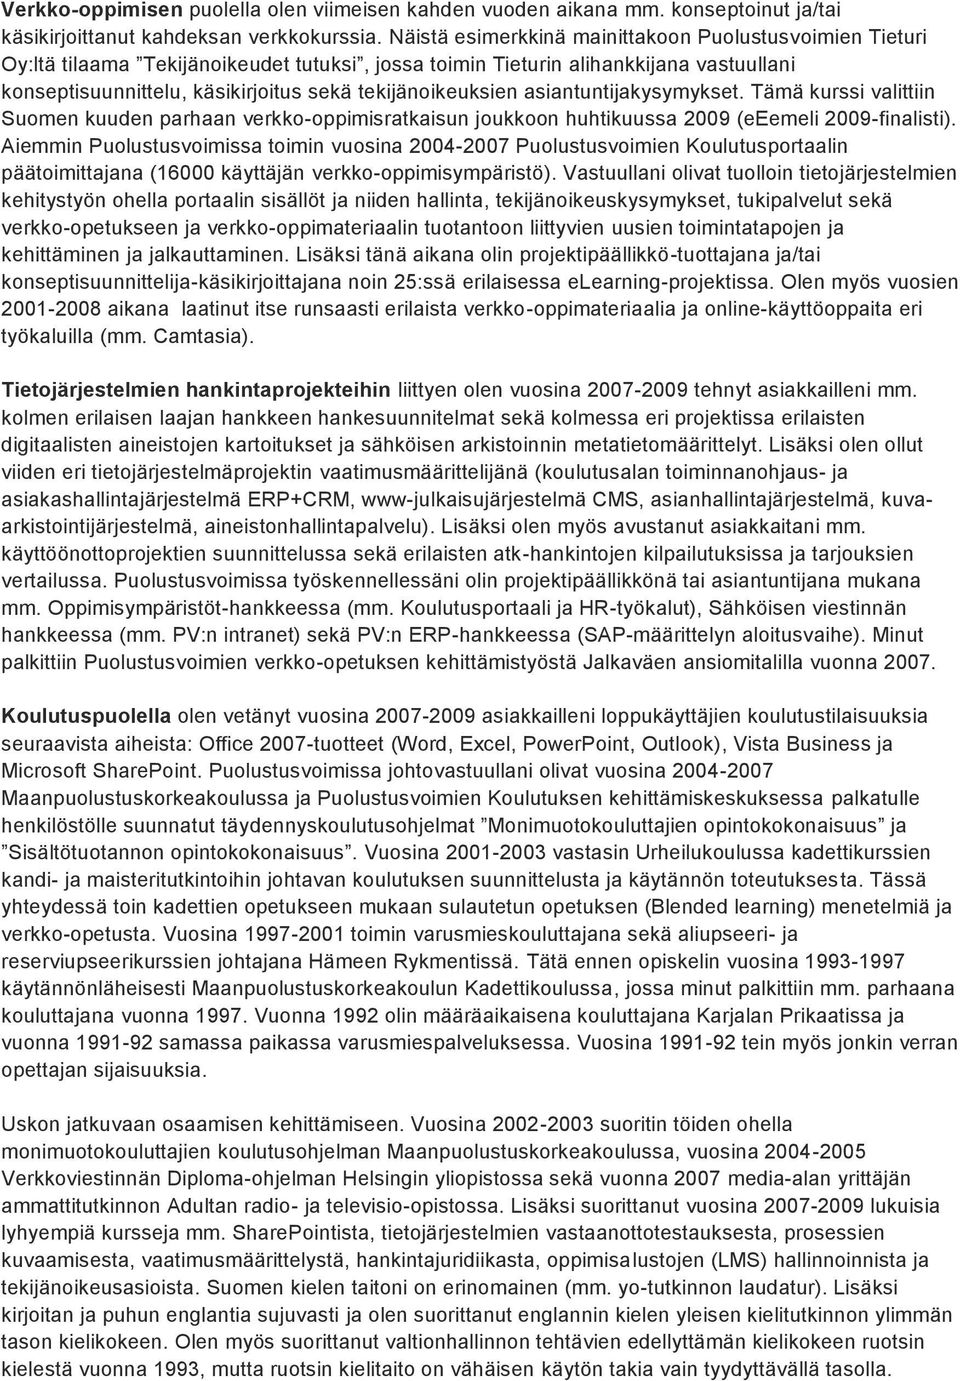 tekijänoikeuksien asiantuntijakysymykset. Tämä kurssi valittiin Suomen kuuden parhaan verkko-oppimisratkaisun joukkoon huhtikuussa 2009 (eeemeli 2009-finalisti).